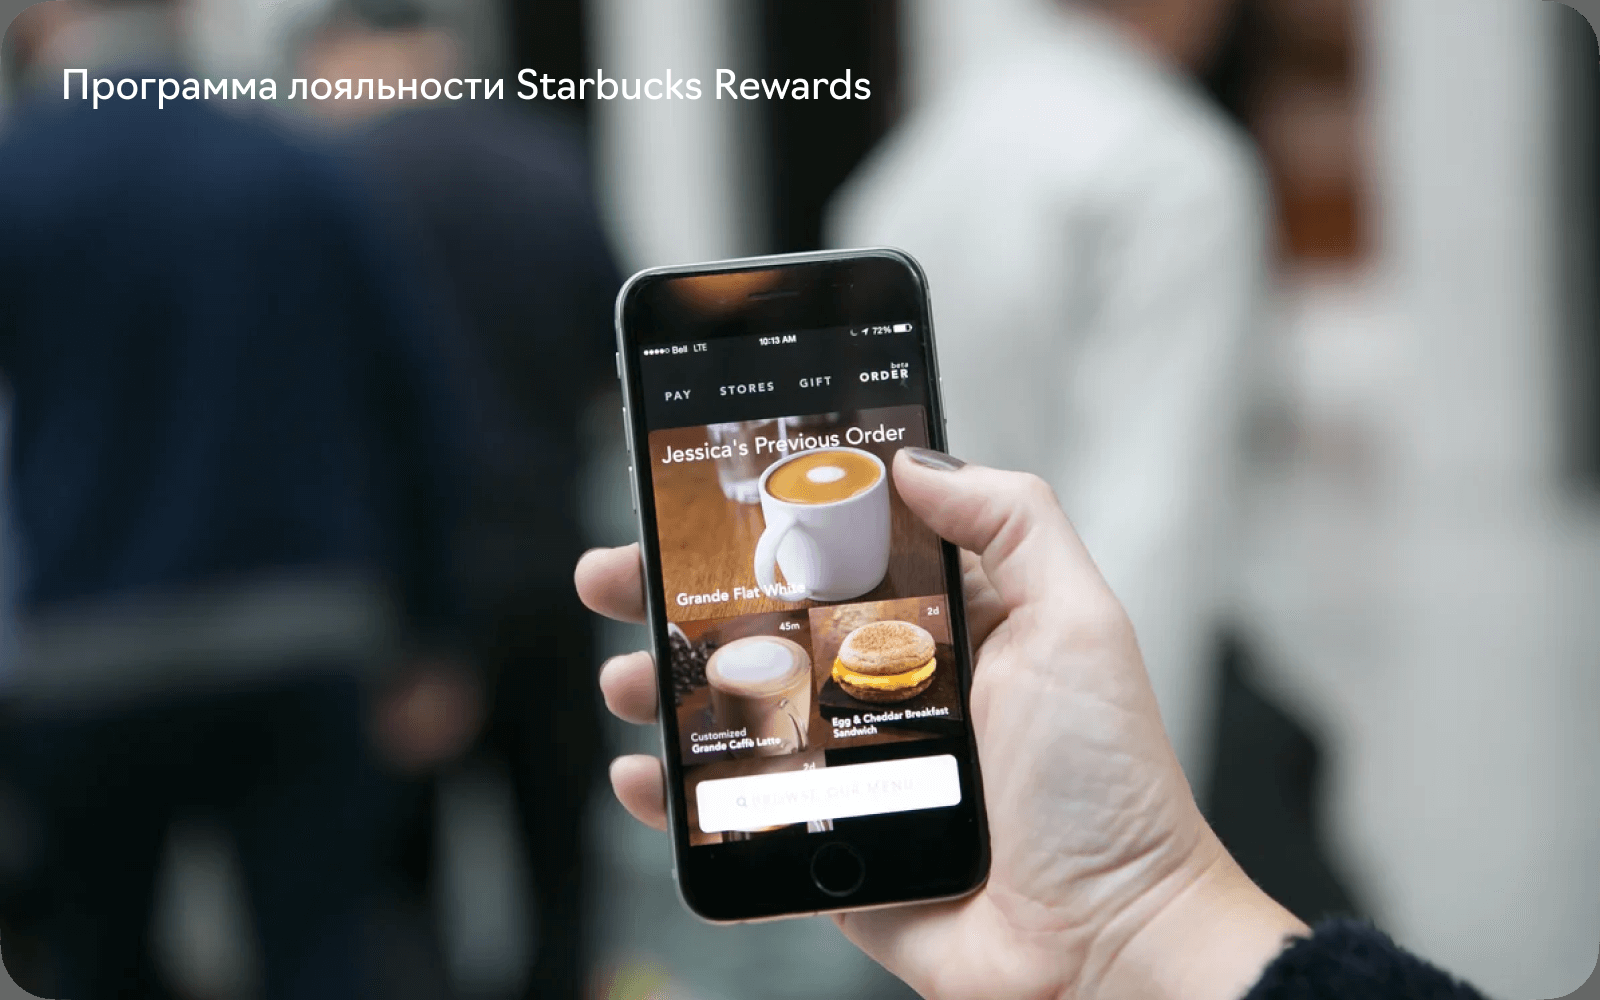 Примеры использования ИИ в программах лояльности: Starbucks